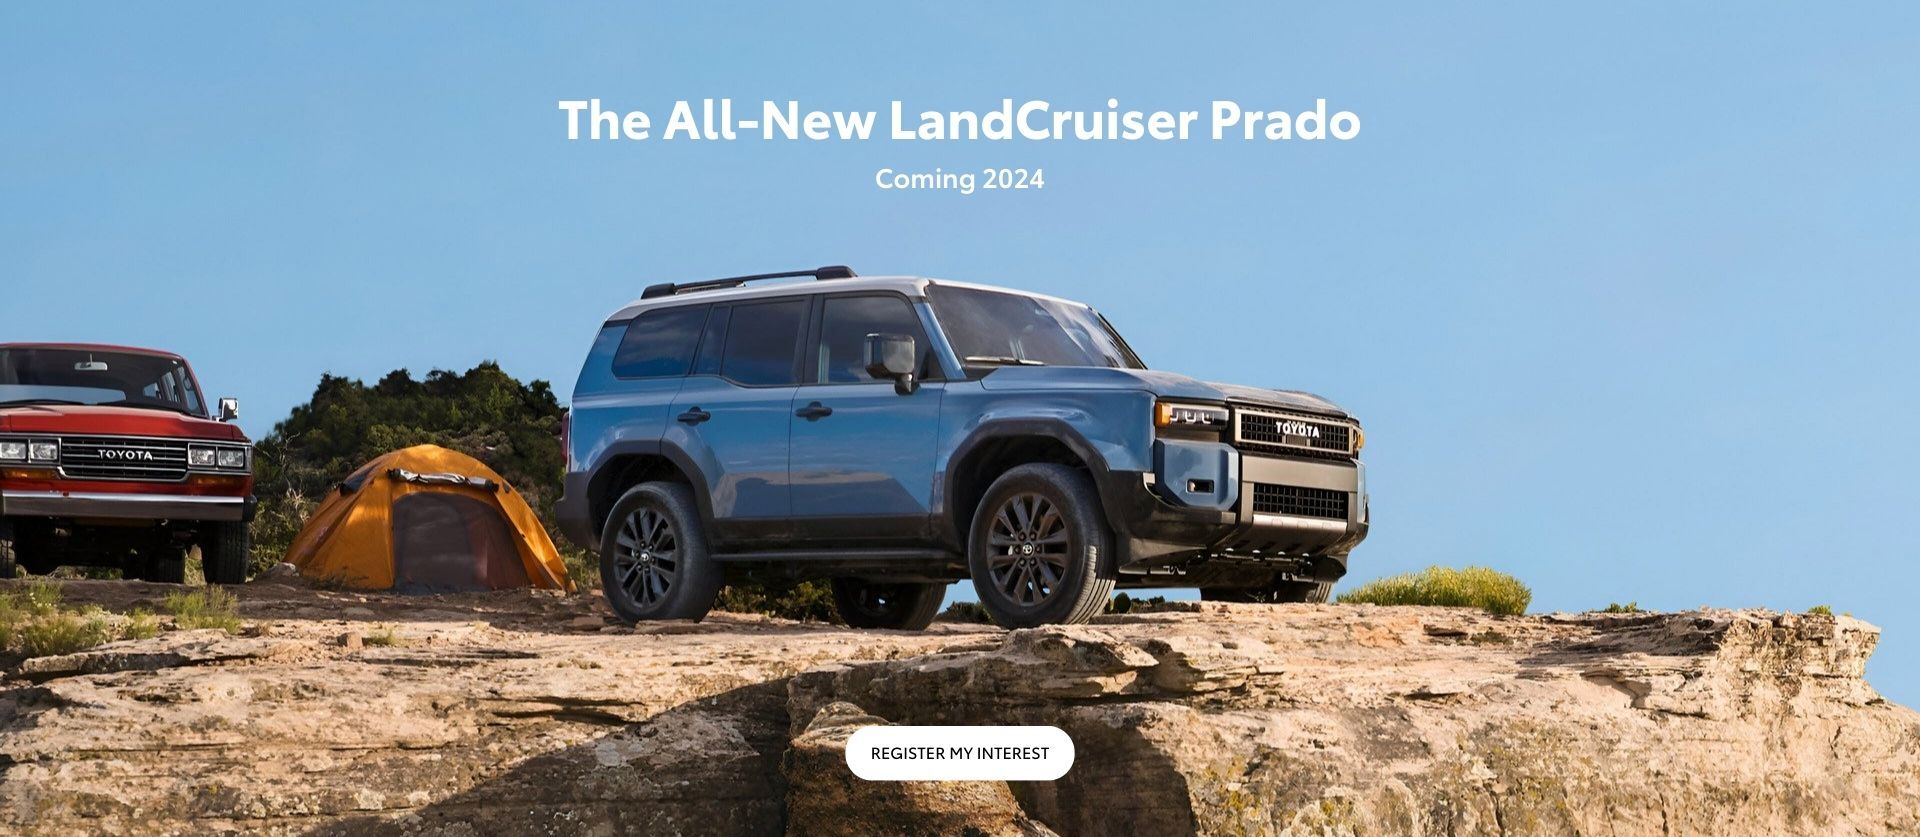 The All-New LandCruiser Prado Coming 2024